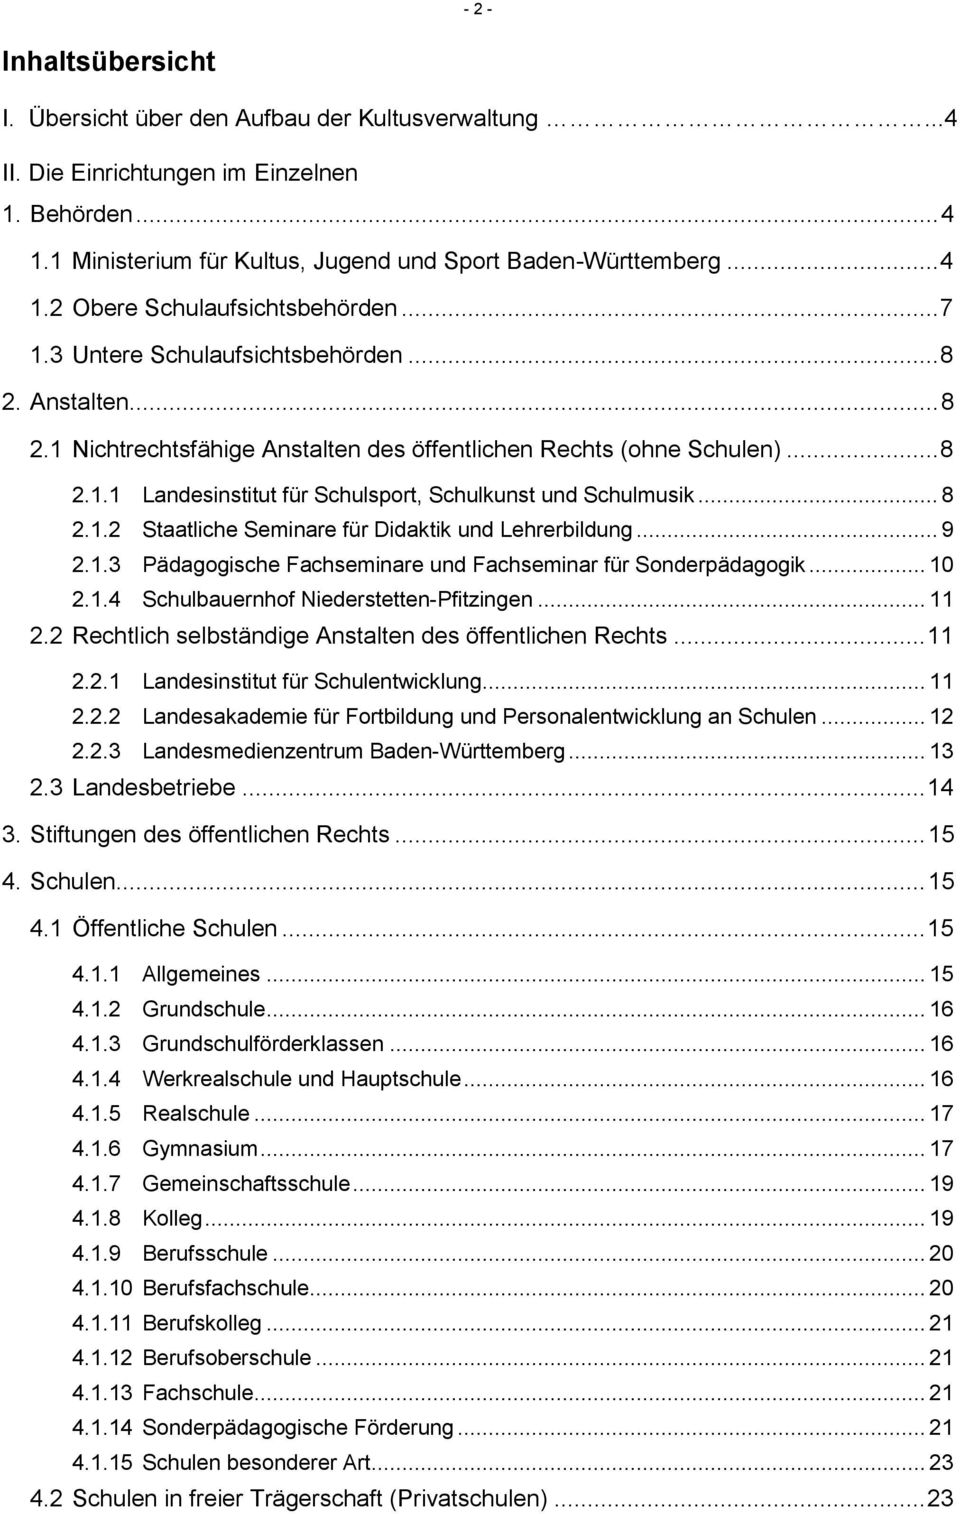 .. 8 2.1.2 Staatliche Seminare für Didaktik und Lehrerbildung... 9 2.1.3 Pädagogische Fachseminare und Fachseminar für Sonderpädagogik... 10 2.1.4 Schulbauernhof Niederstetten-Pfitzingen... 11 2.